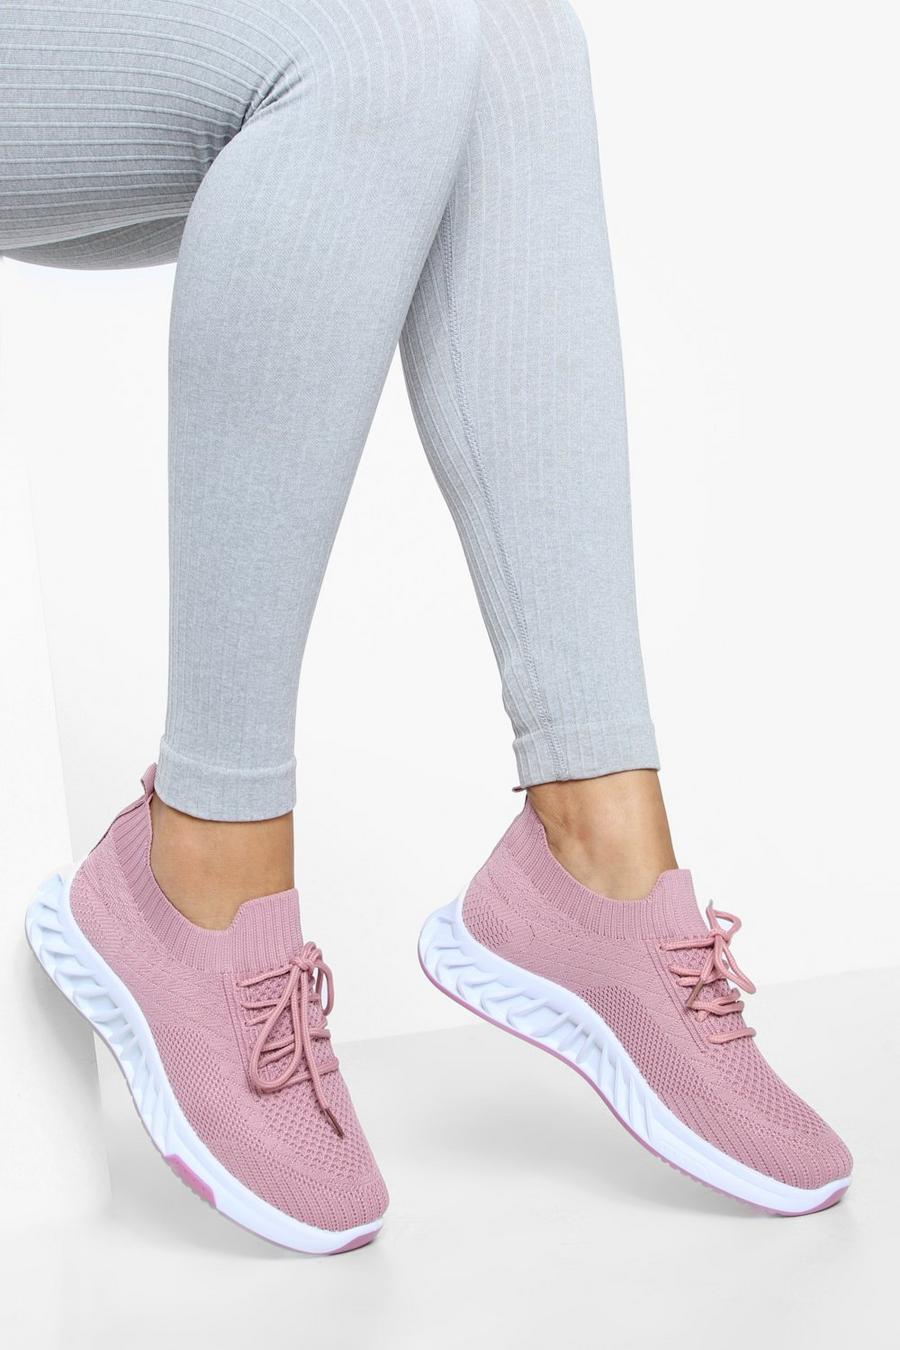 Zapatillas deportivas calcetín de tela con tiras cruzadas, Pink rosa